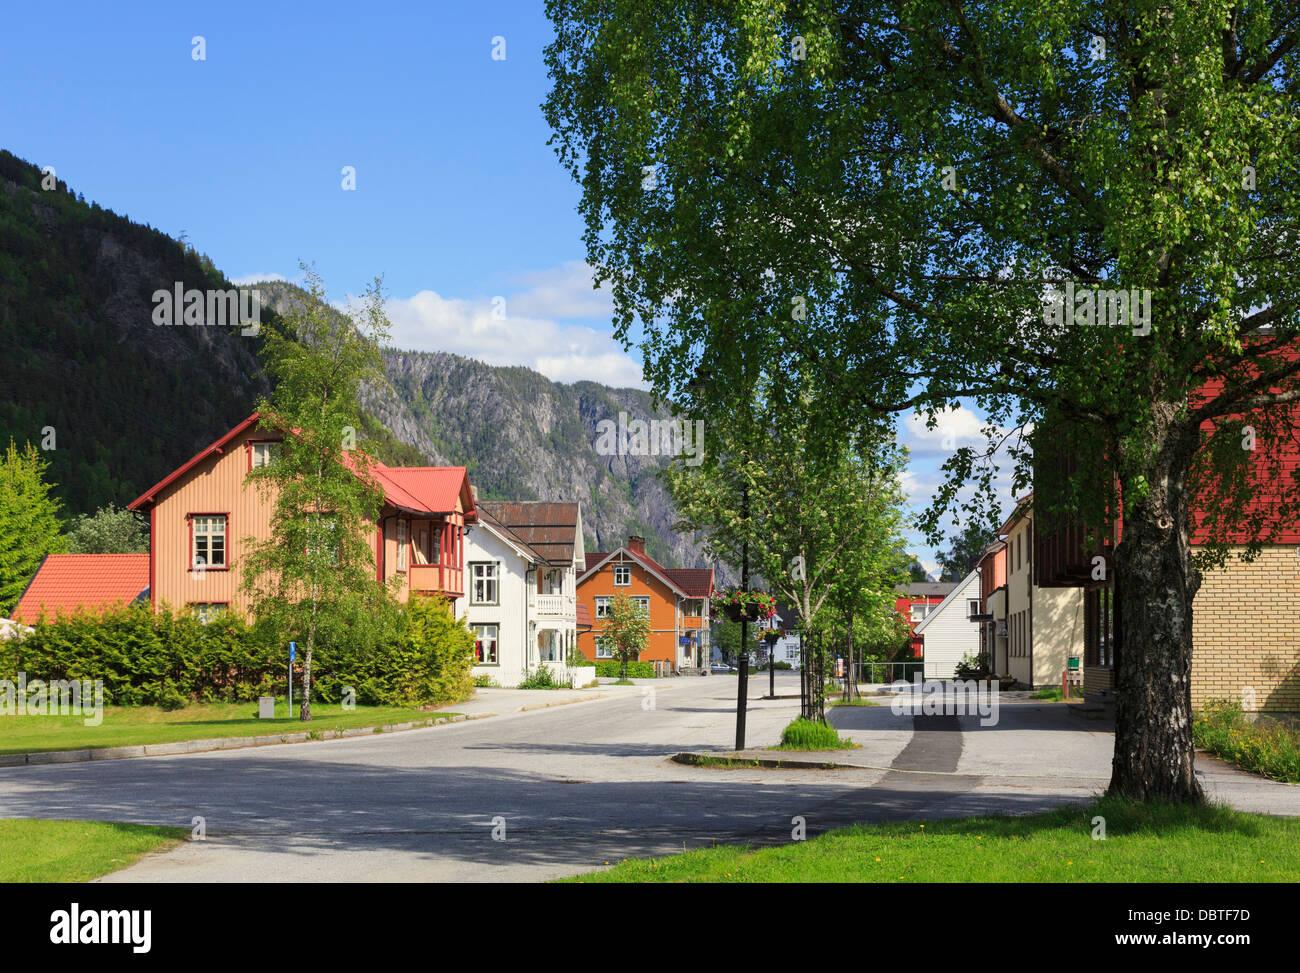 Typischen norwegischen Holzhäusern entlang ruhigen Hauptstraße in Dorf Dalen, Telemark, Norwegen, Skandinavien Stockfoto